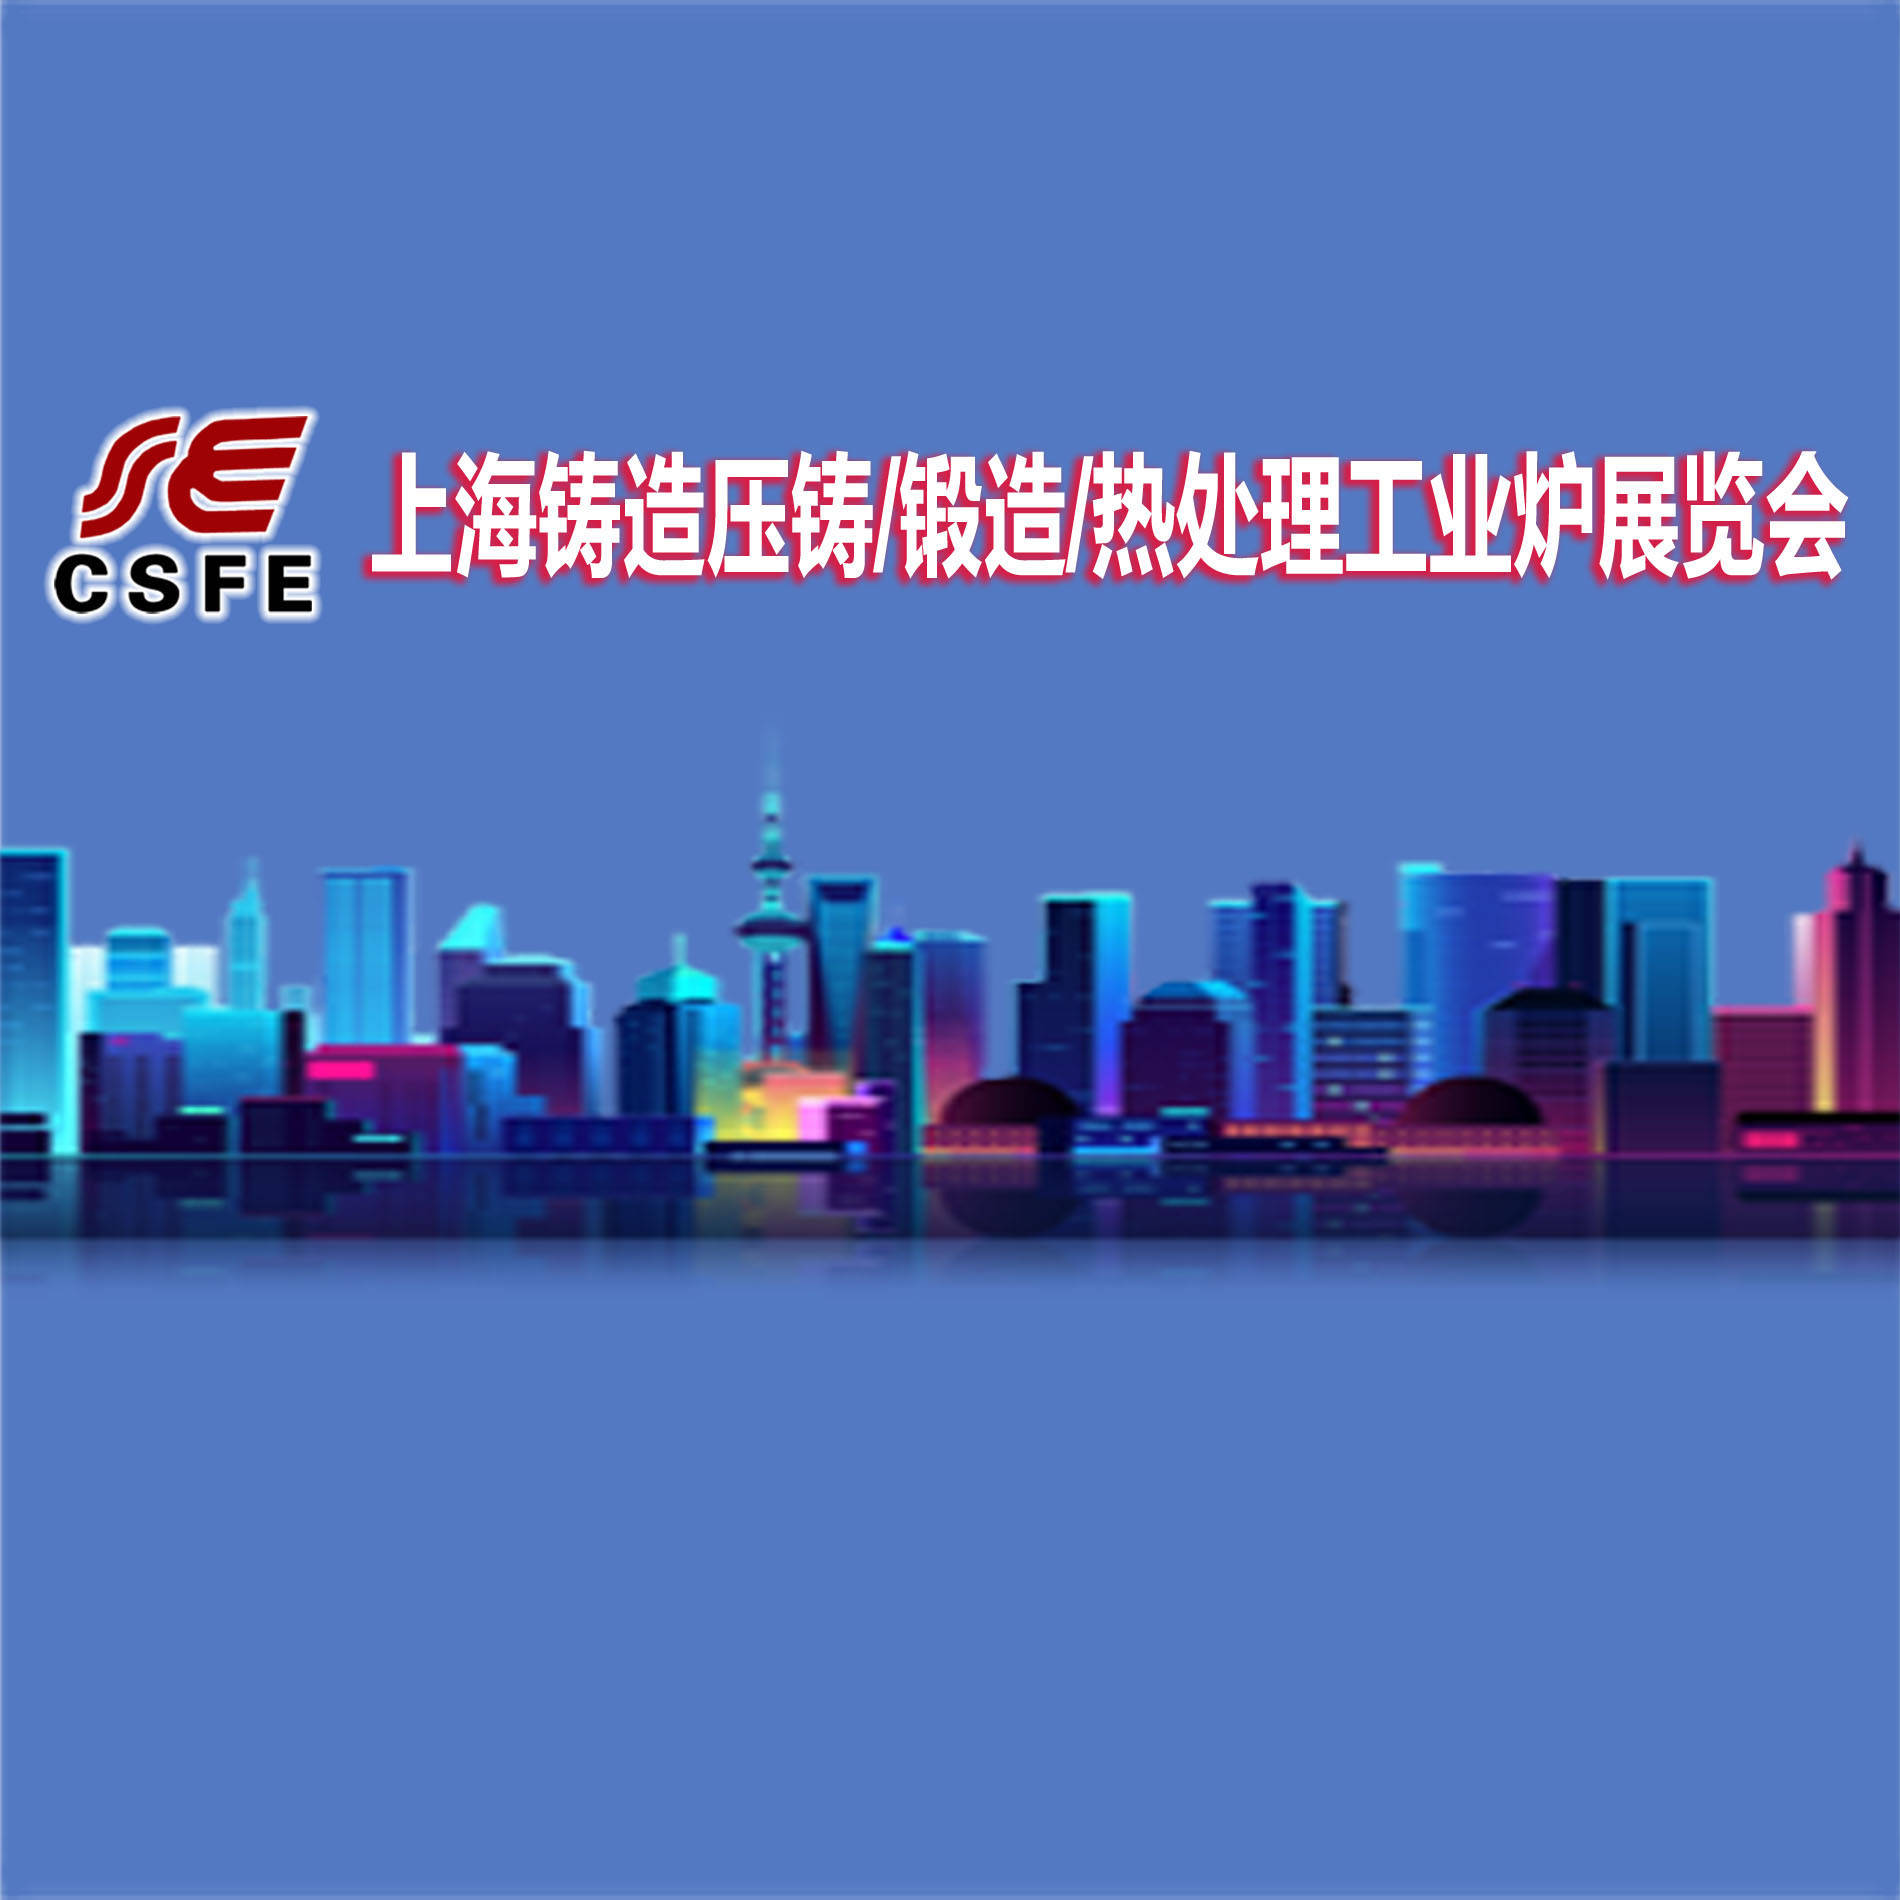 欢迎参观2021第17届上海国际铸造压铸、锻造、热处理工业炉展